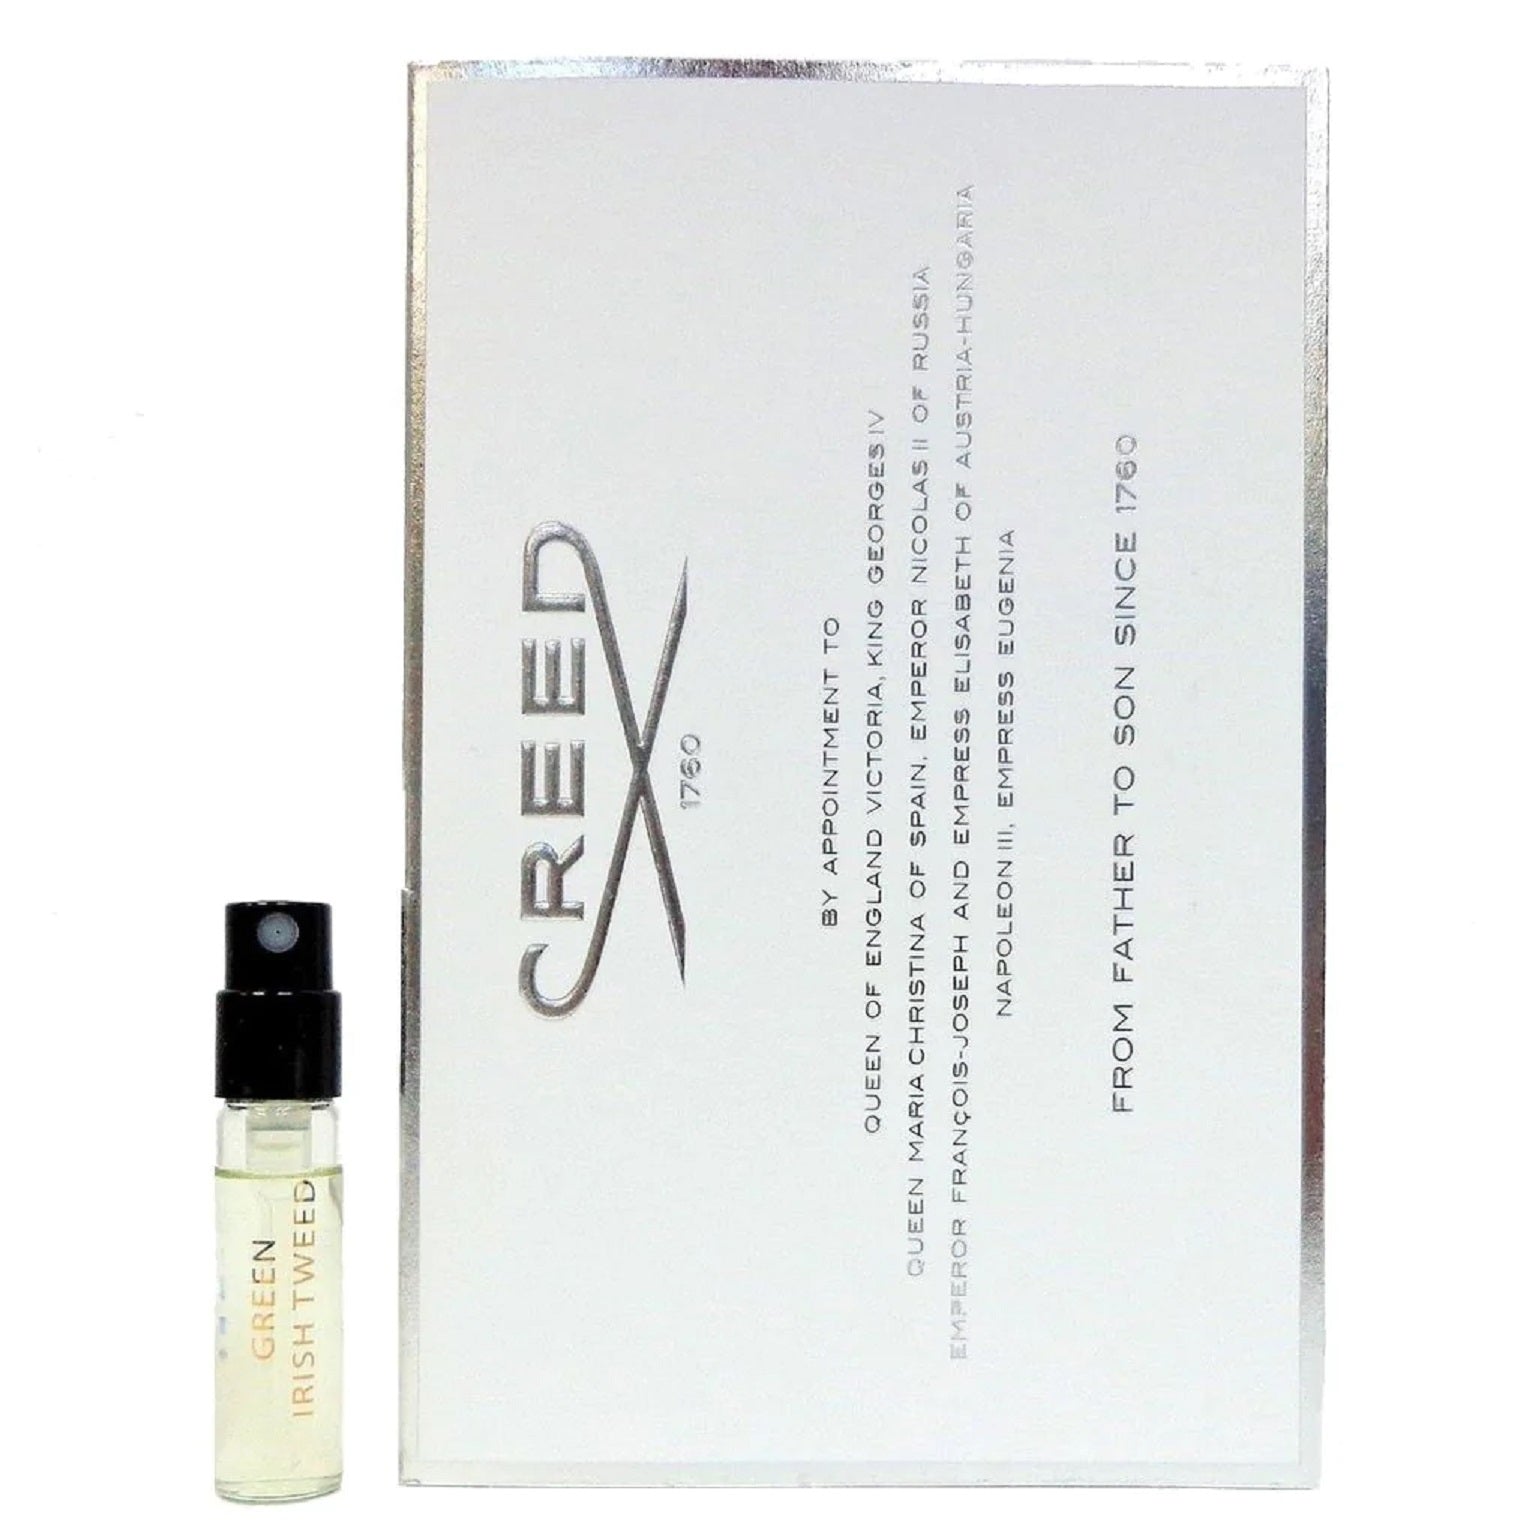 Creed Oficiální vzorek parfému Green Irish Tweed edp 2.5 ml